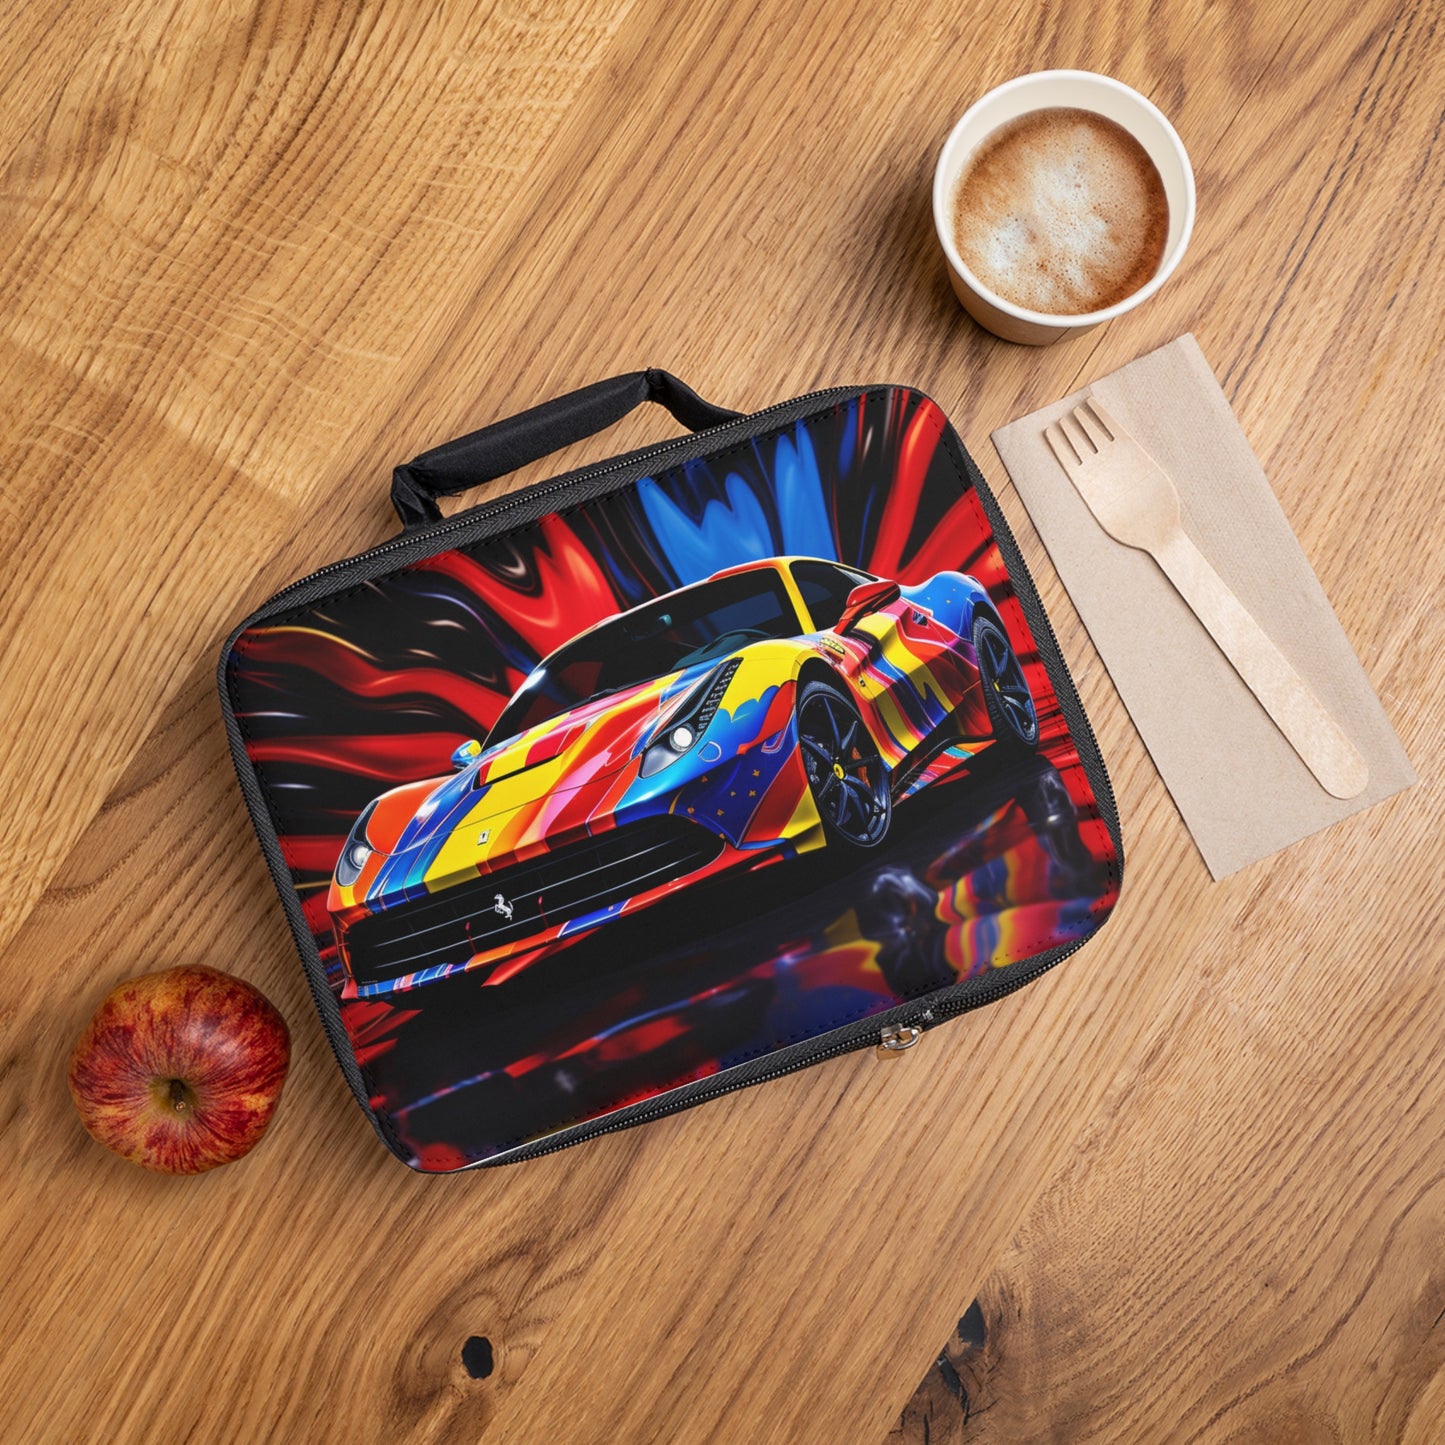 Lunch Bag Hyper Colorfull Ferrari 1